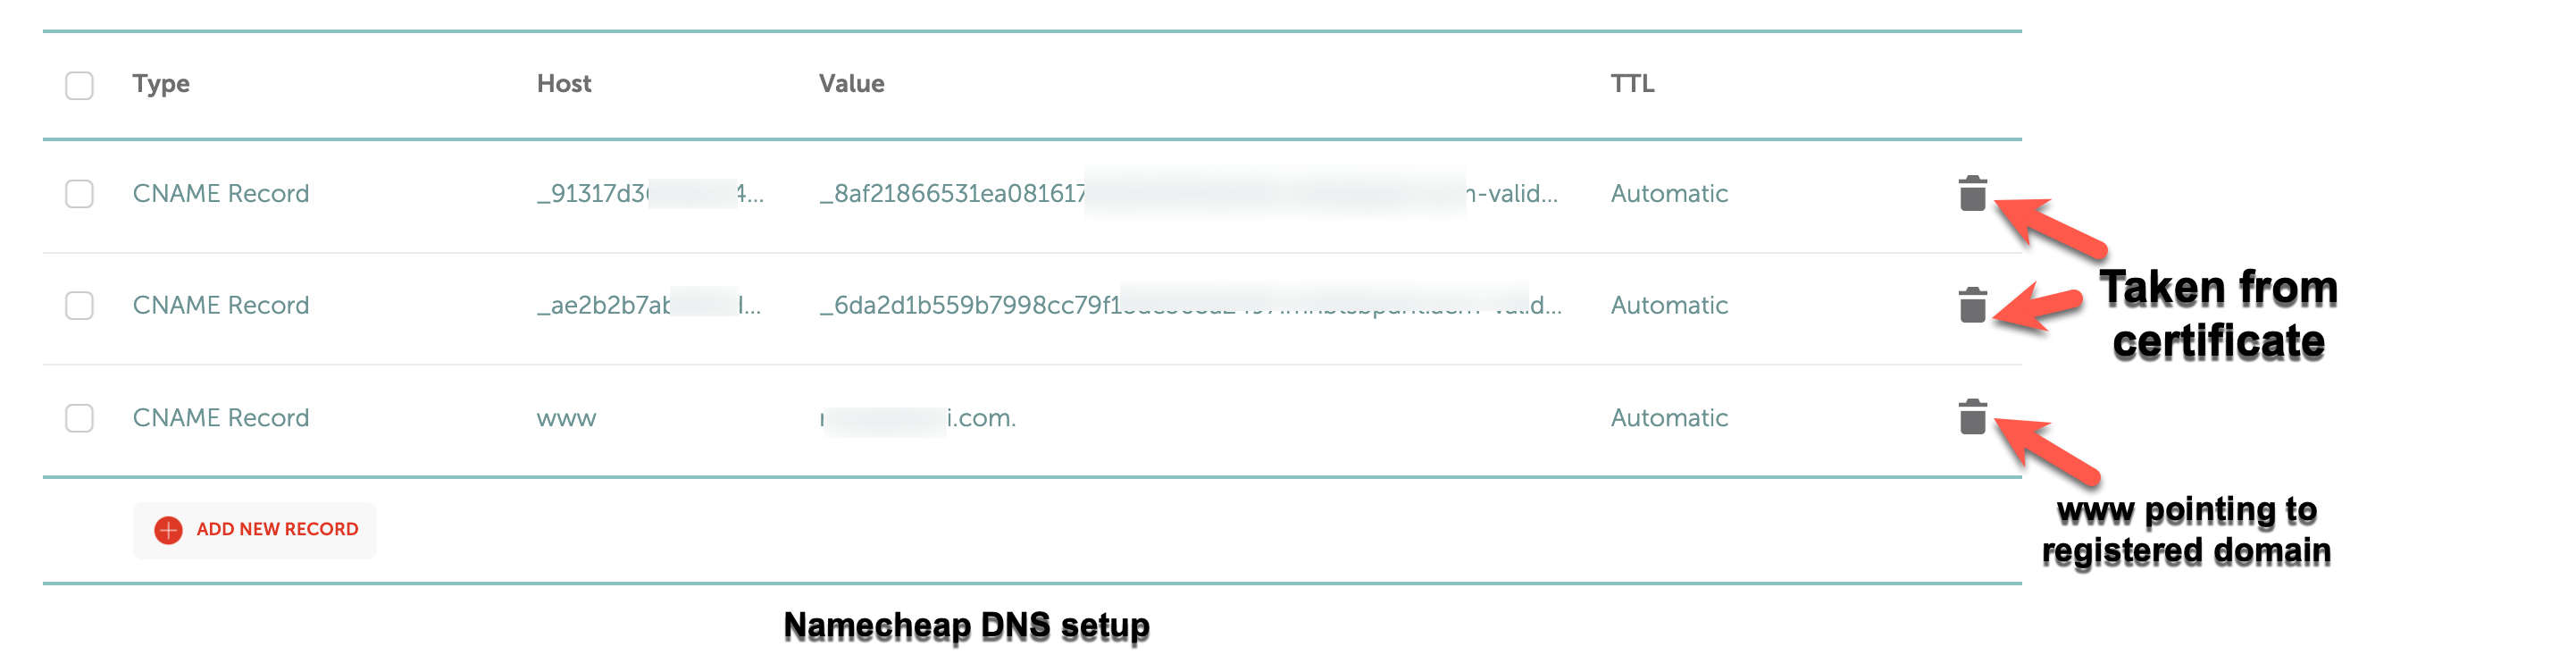 Namecheap DNS setp